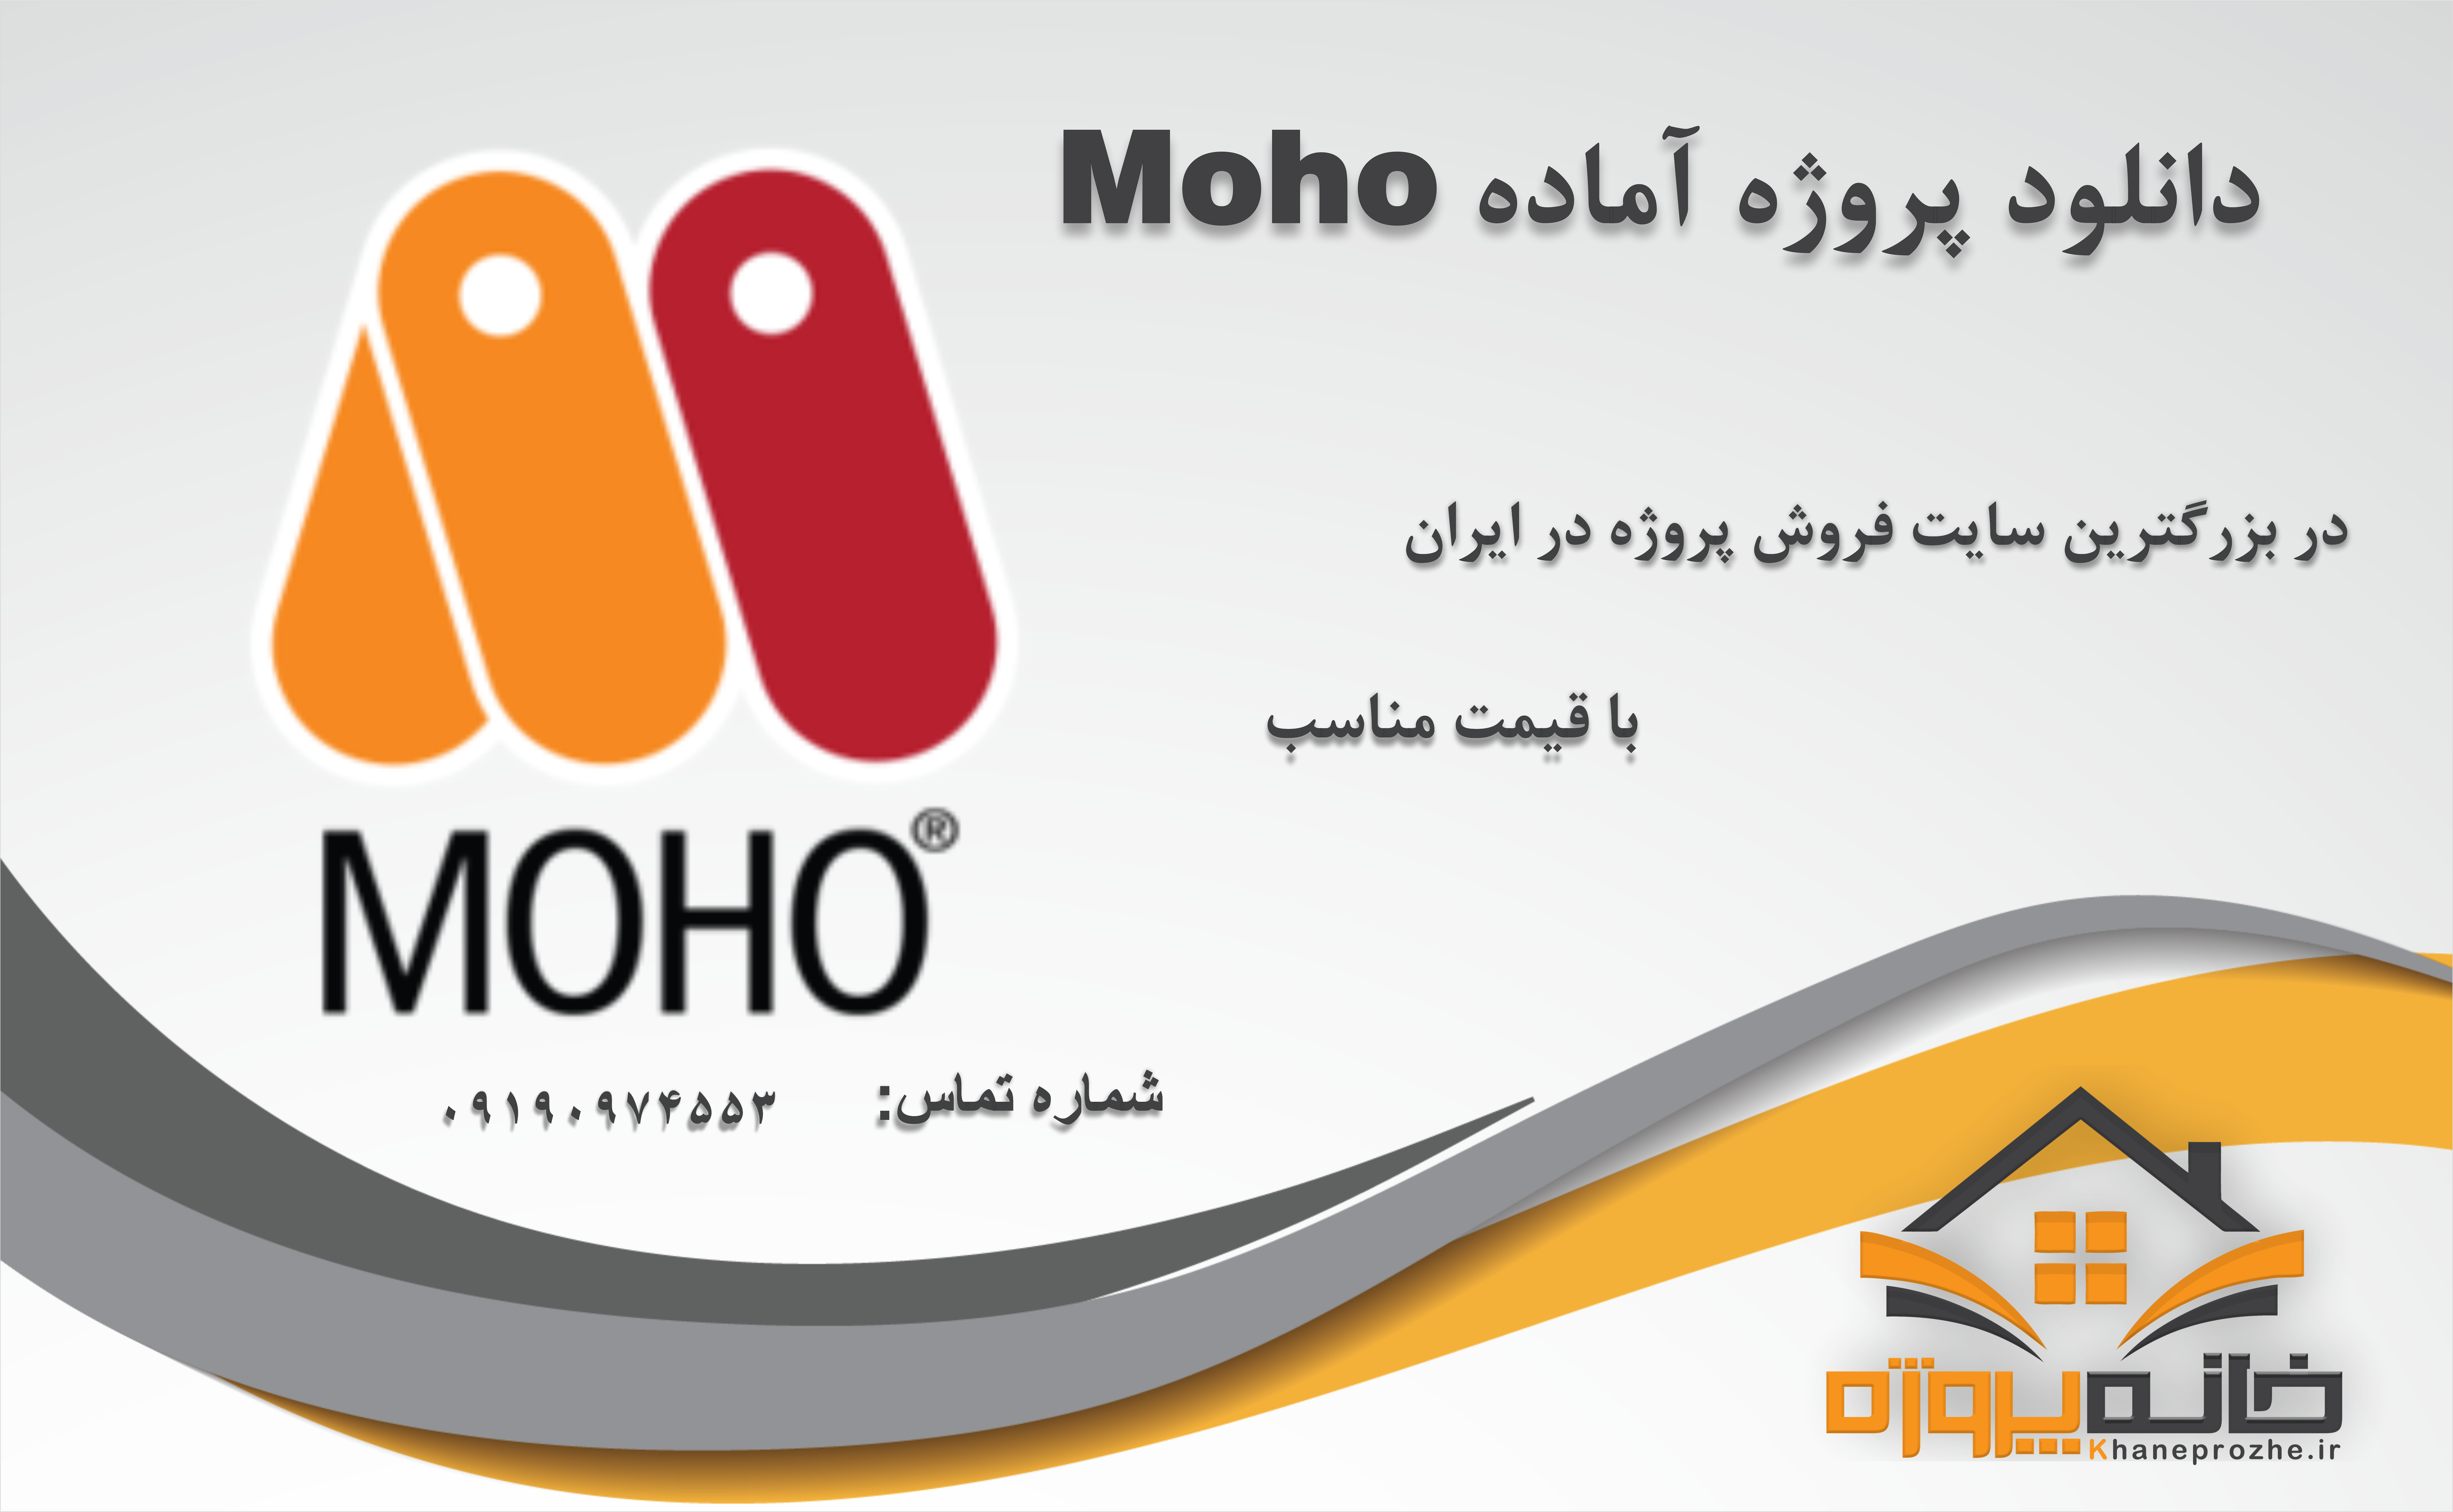 پروژه آماده موهو (Moho)